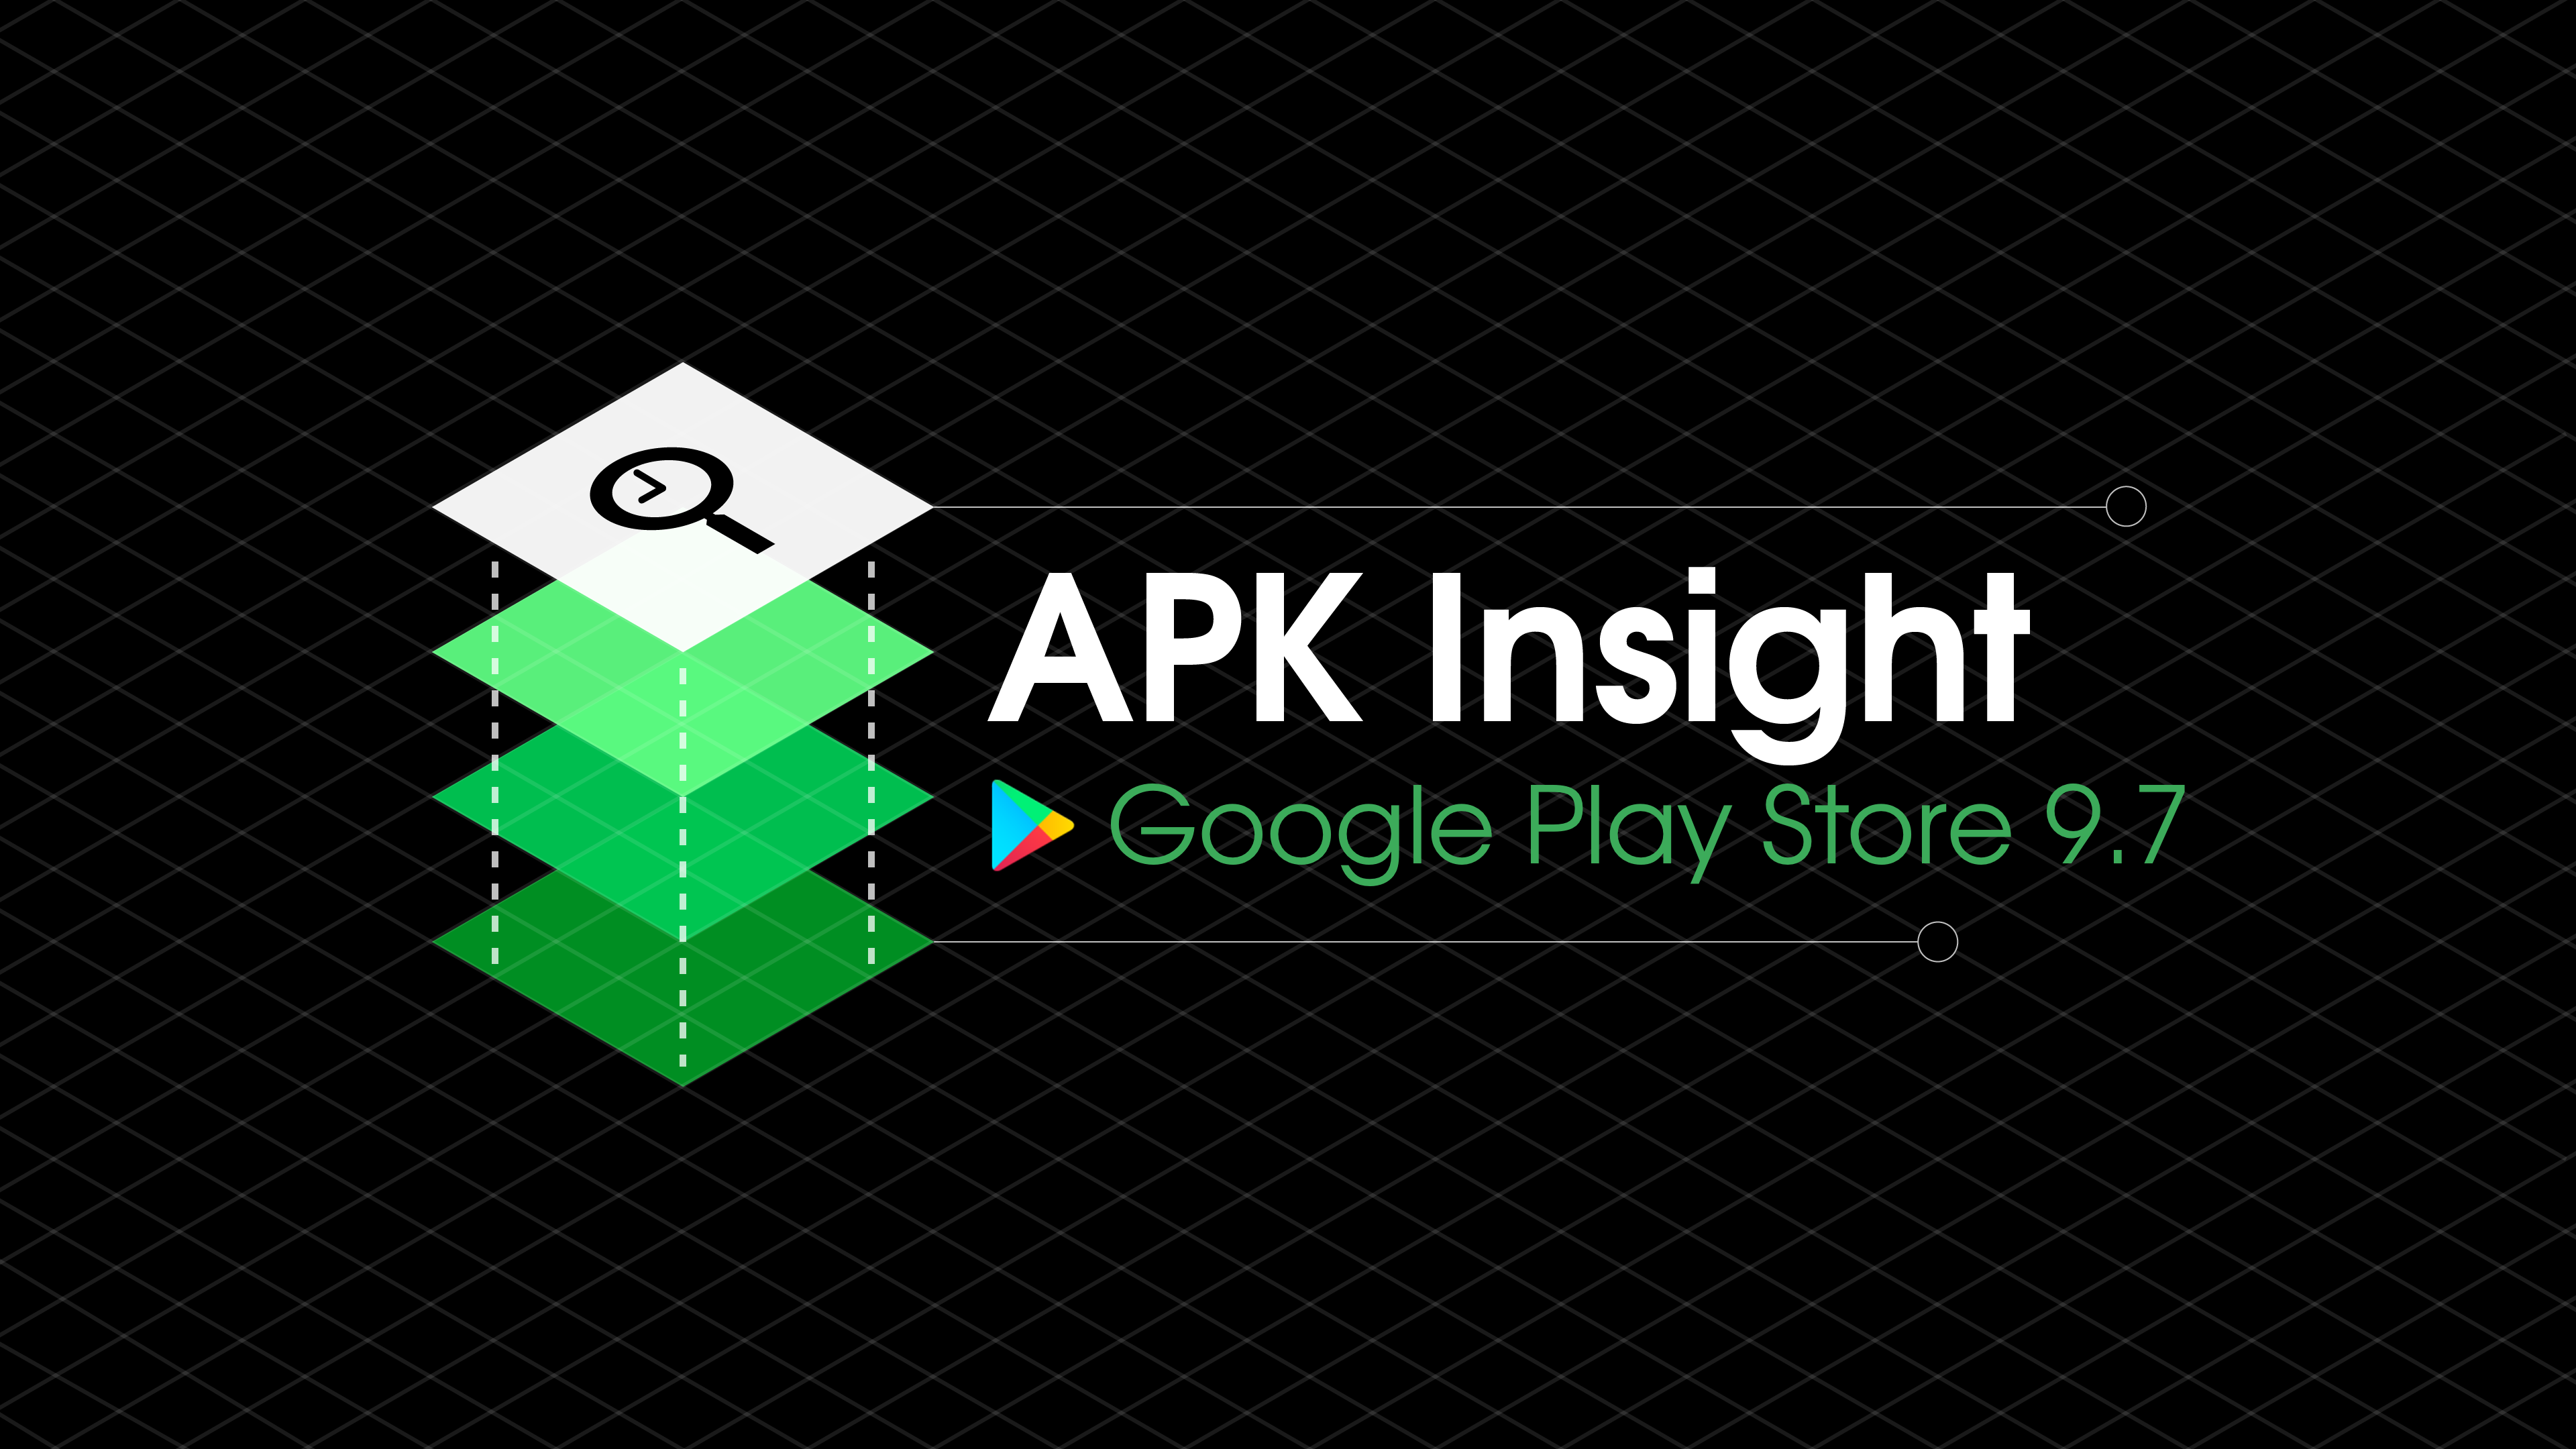 Google Play Store 9.7 testando uma interface de usuário quase branca, emblemas de 'aplicativo semelhante' [APK Insight]